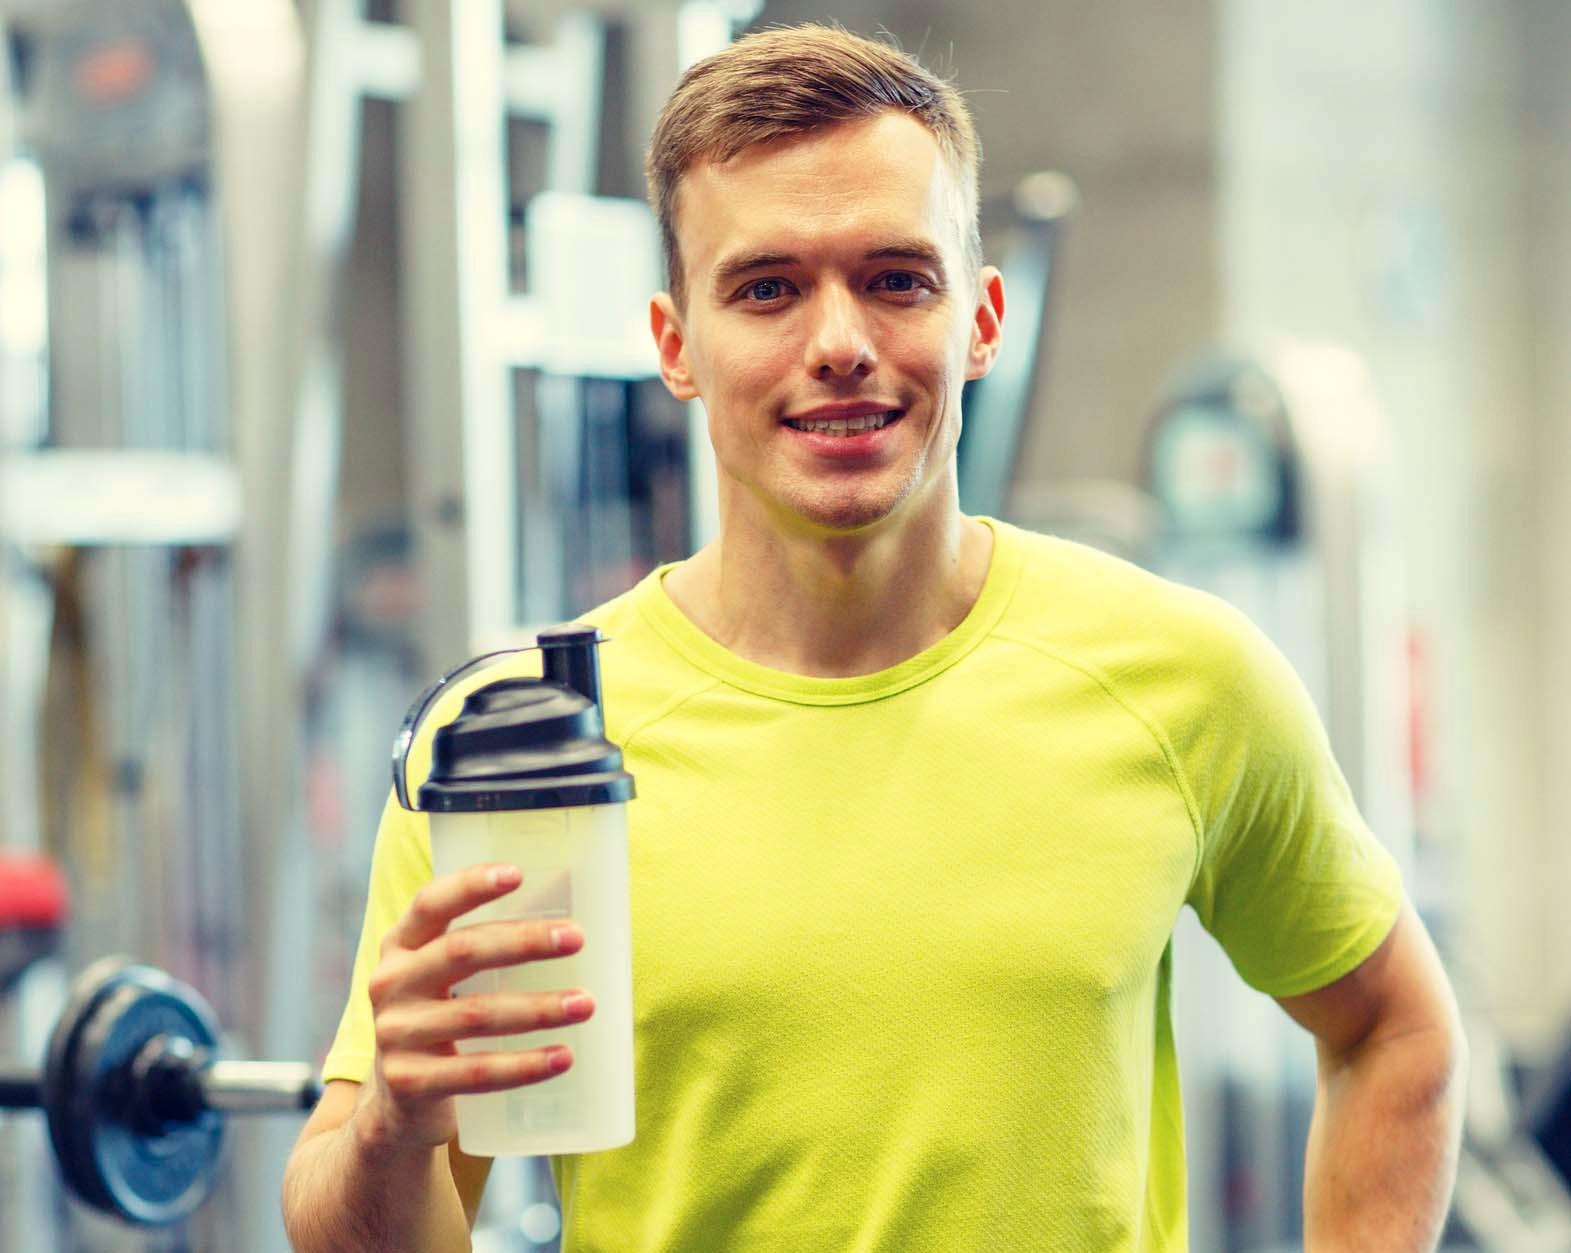 KLAR FOR SHAKE: Proteinshake er det ikke lenger bare fitness-folk som driver med. Men kan det bli for mye proteiner?